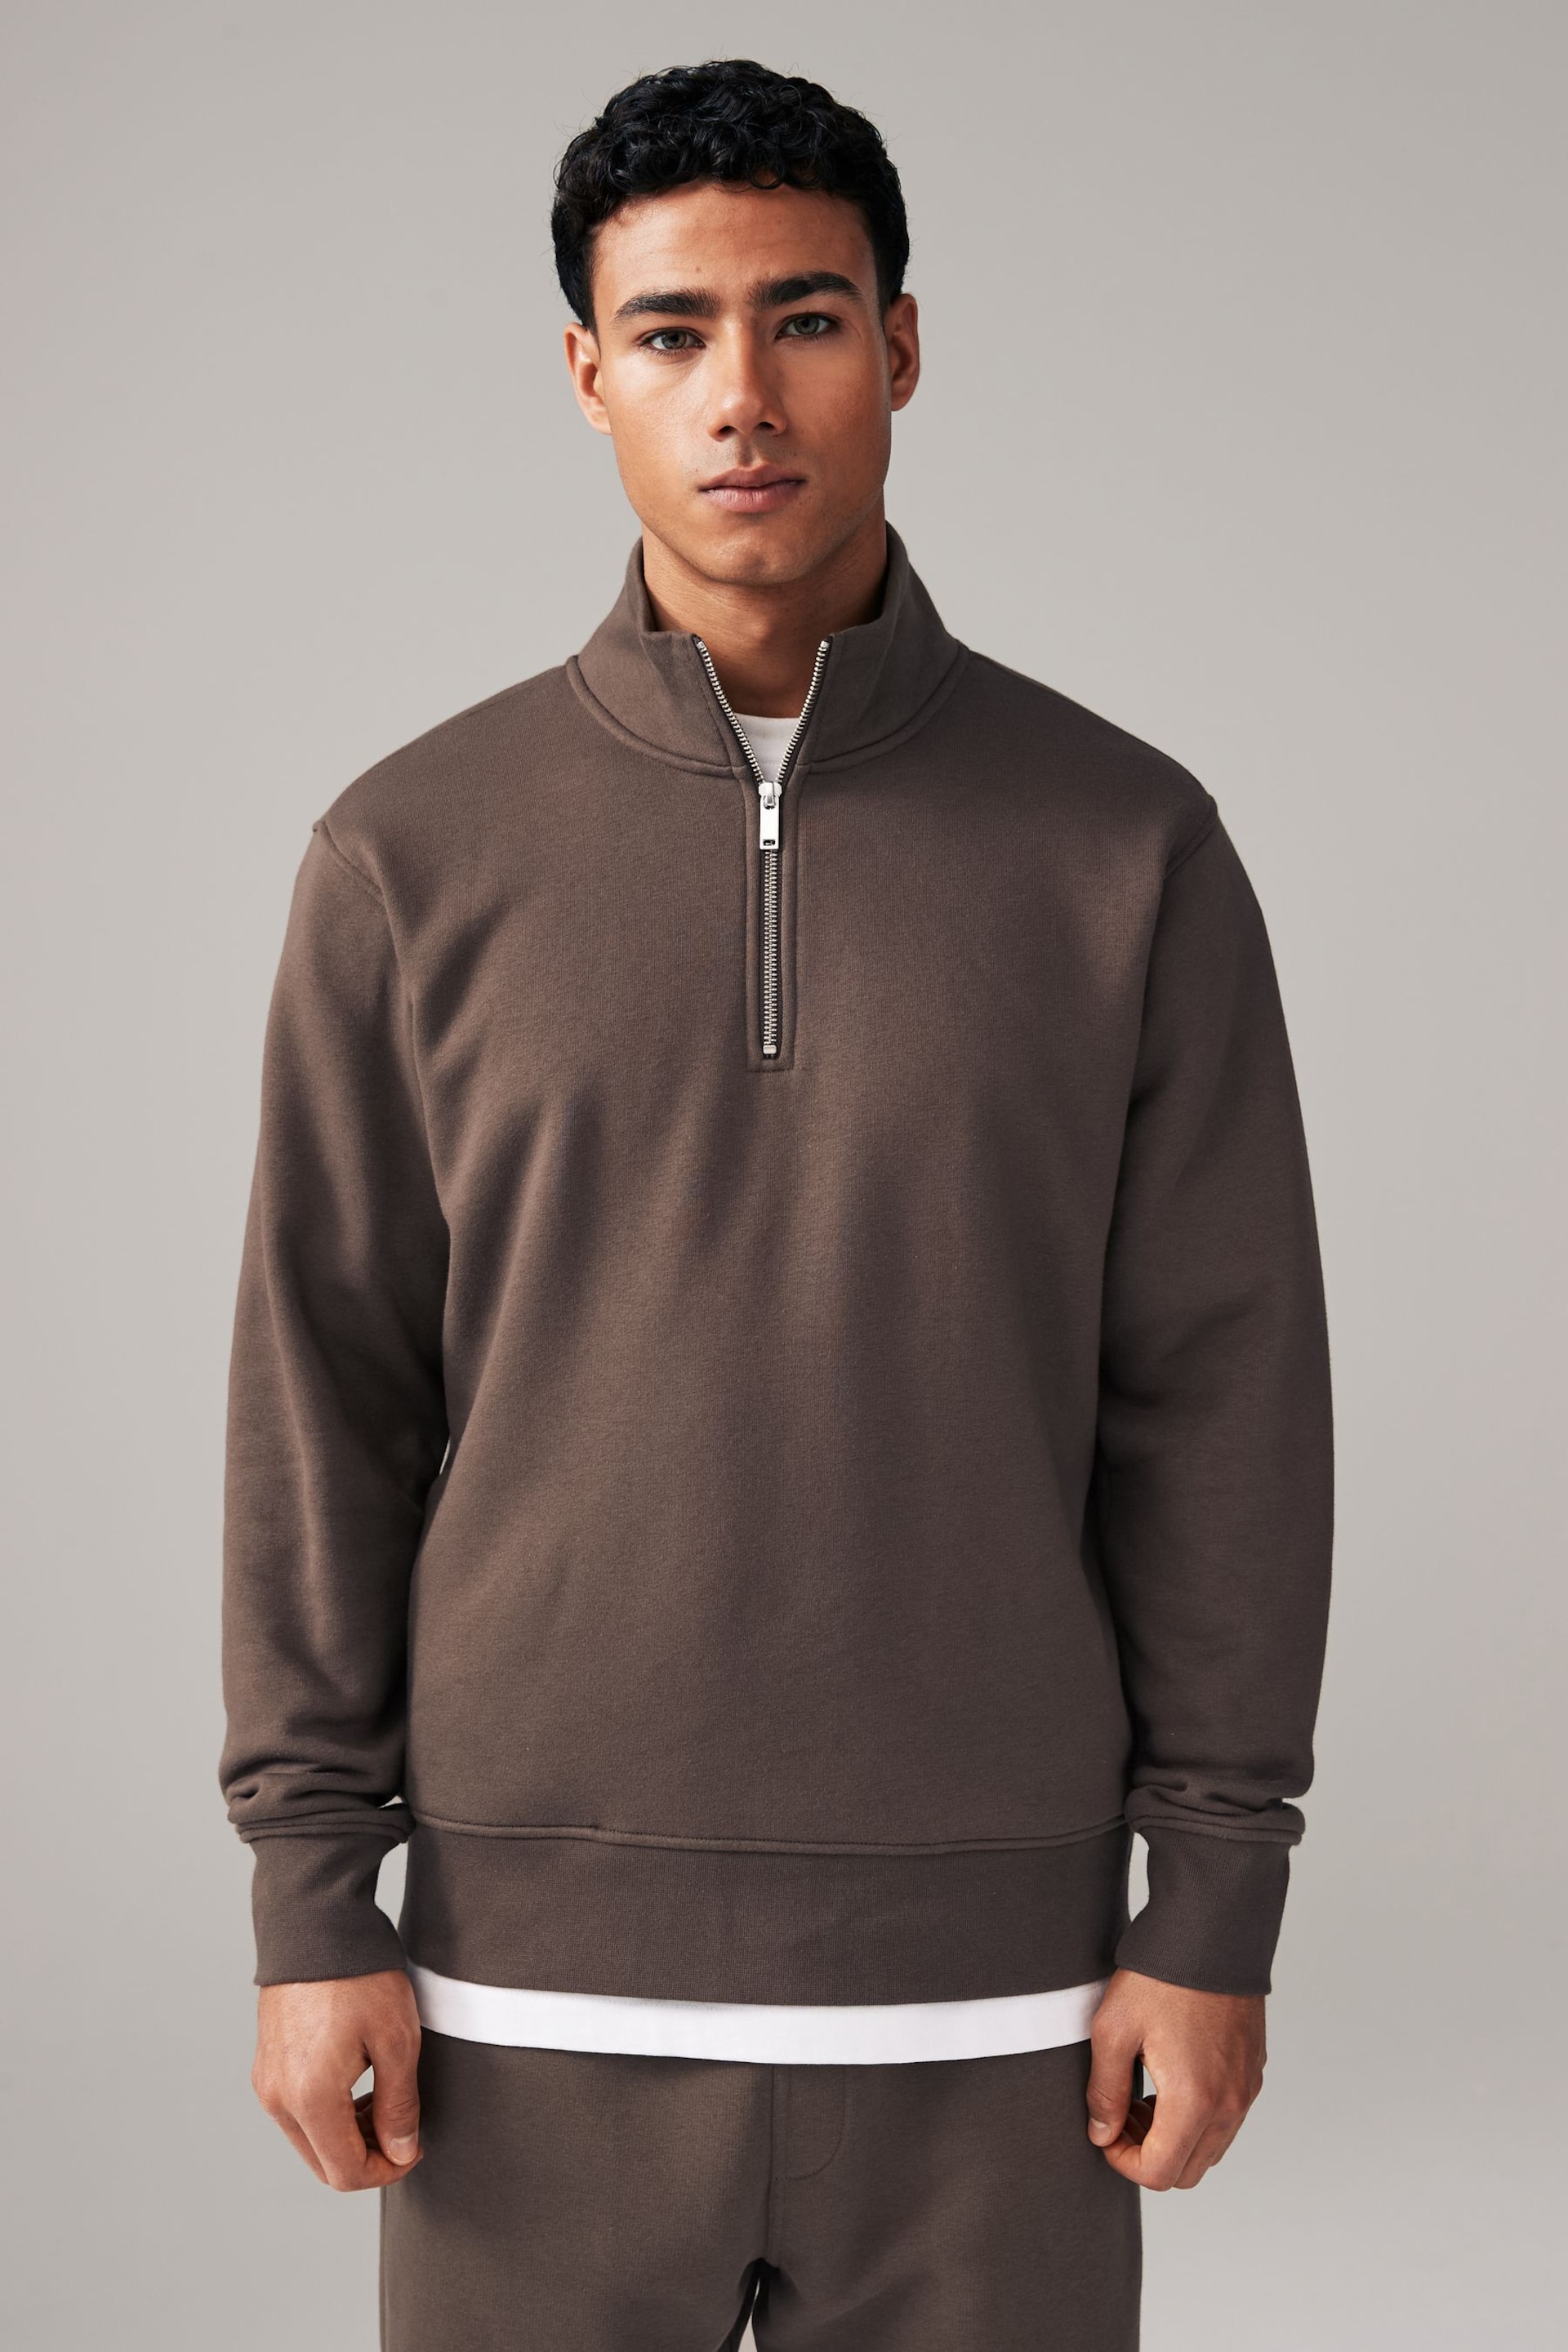 Brown Zip Neck Jersey Cotton Rich Sweatshirt - Image 4 of 8